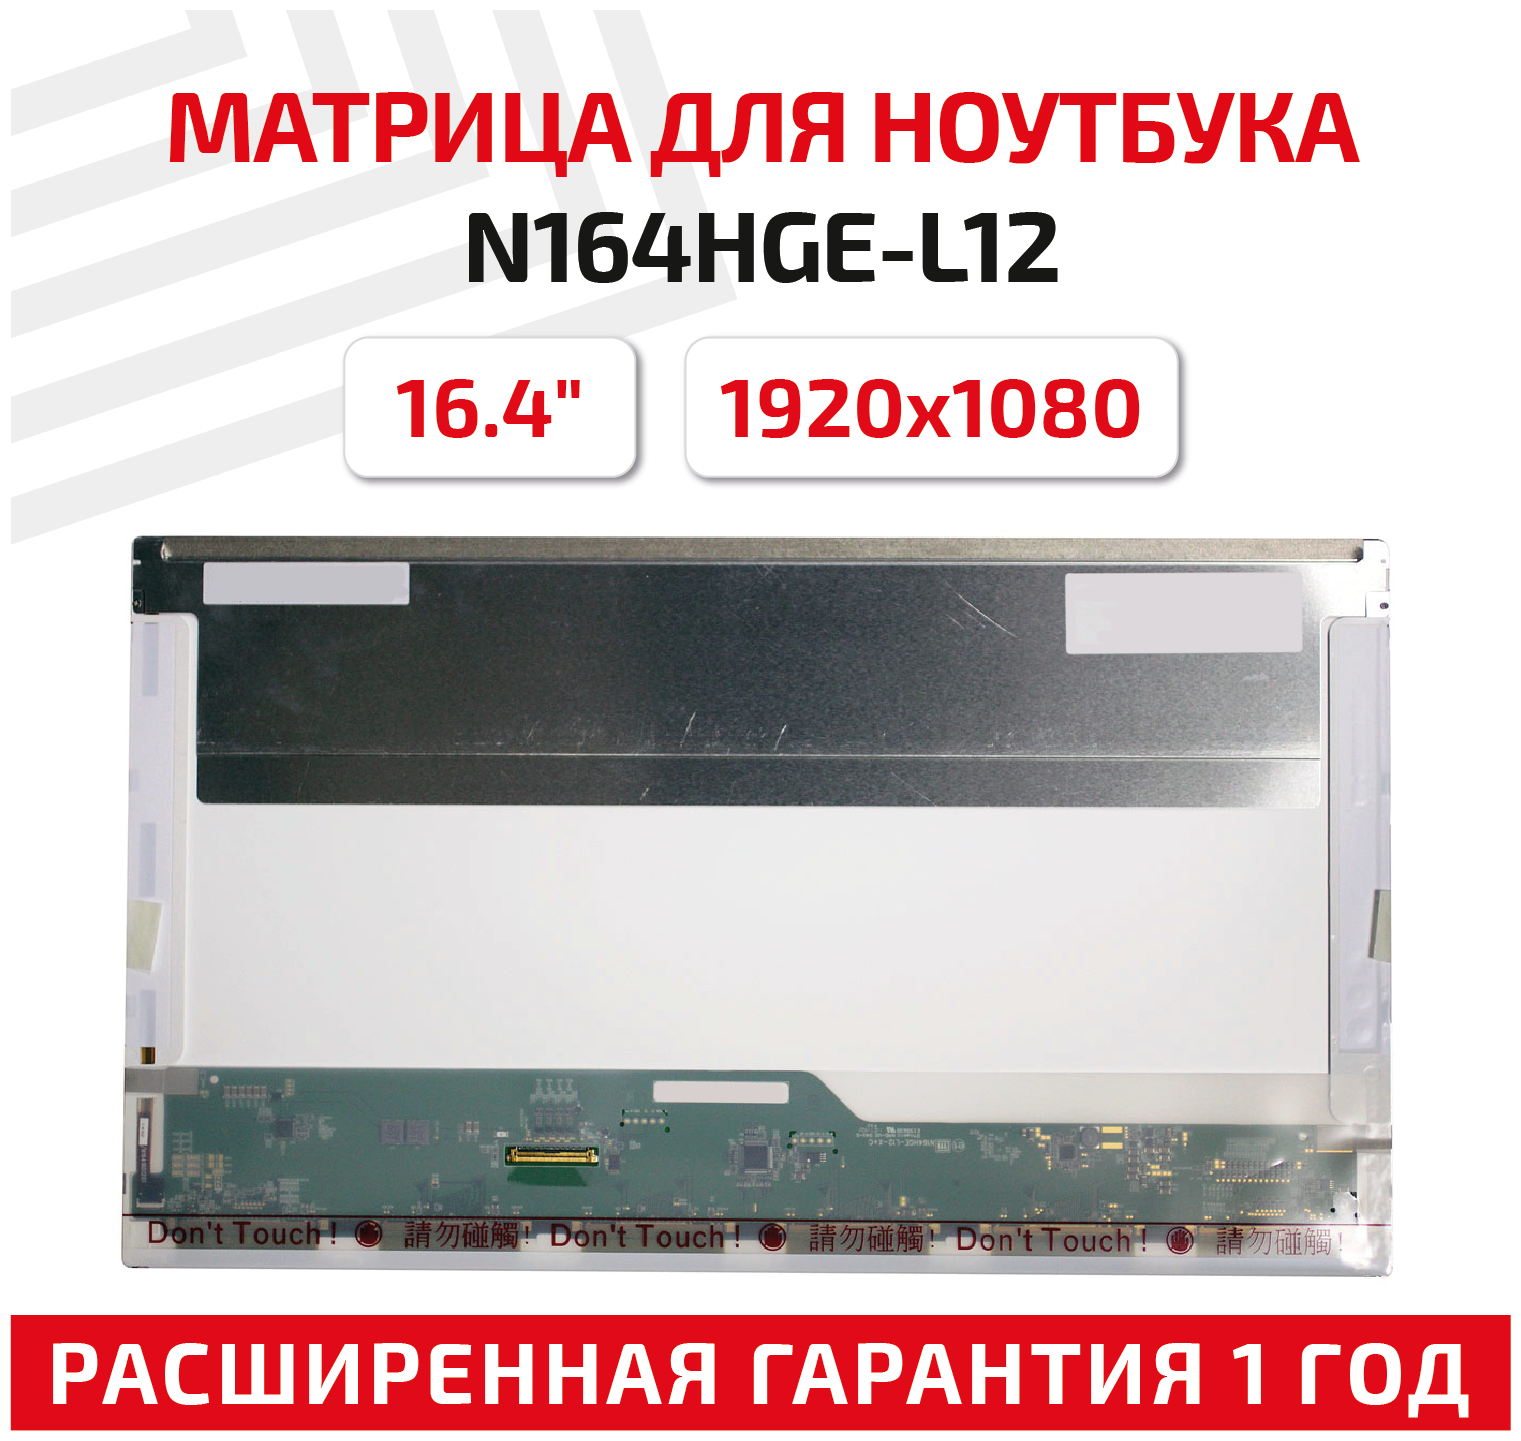 Матрица (экран) для ноутбука N164HGE-L12, 16.4", 1920x1080, Normal (стандарт), 40-pin, светодиодная (LED), матовая